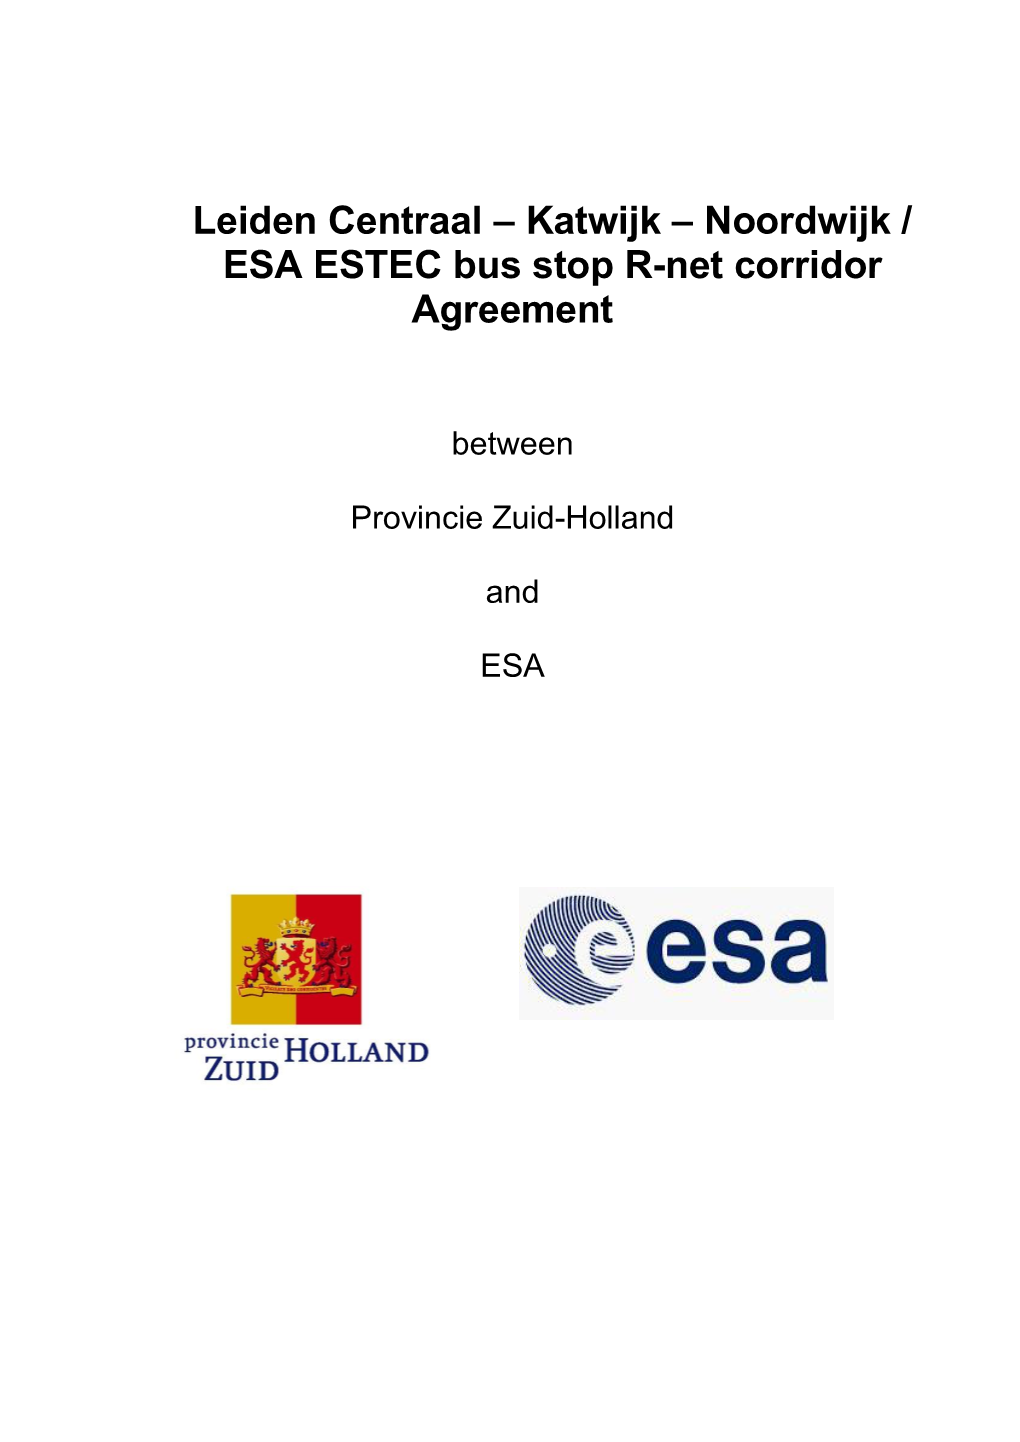 Leiden Centraal – Katwijk – Noordwijk / ESA ESTEC Bus Stop R-Net